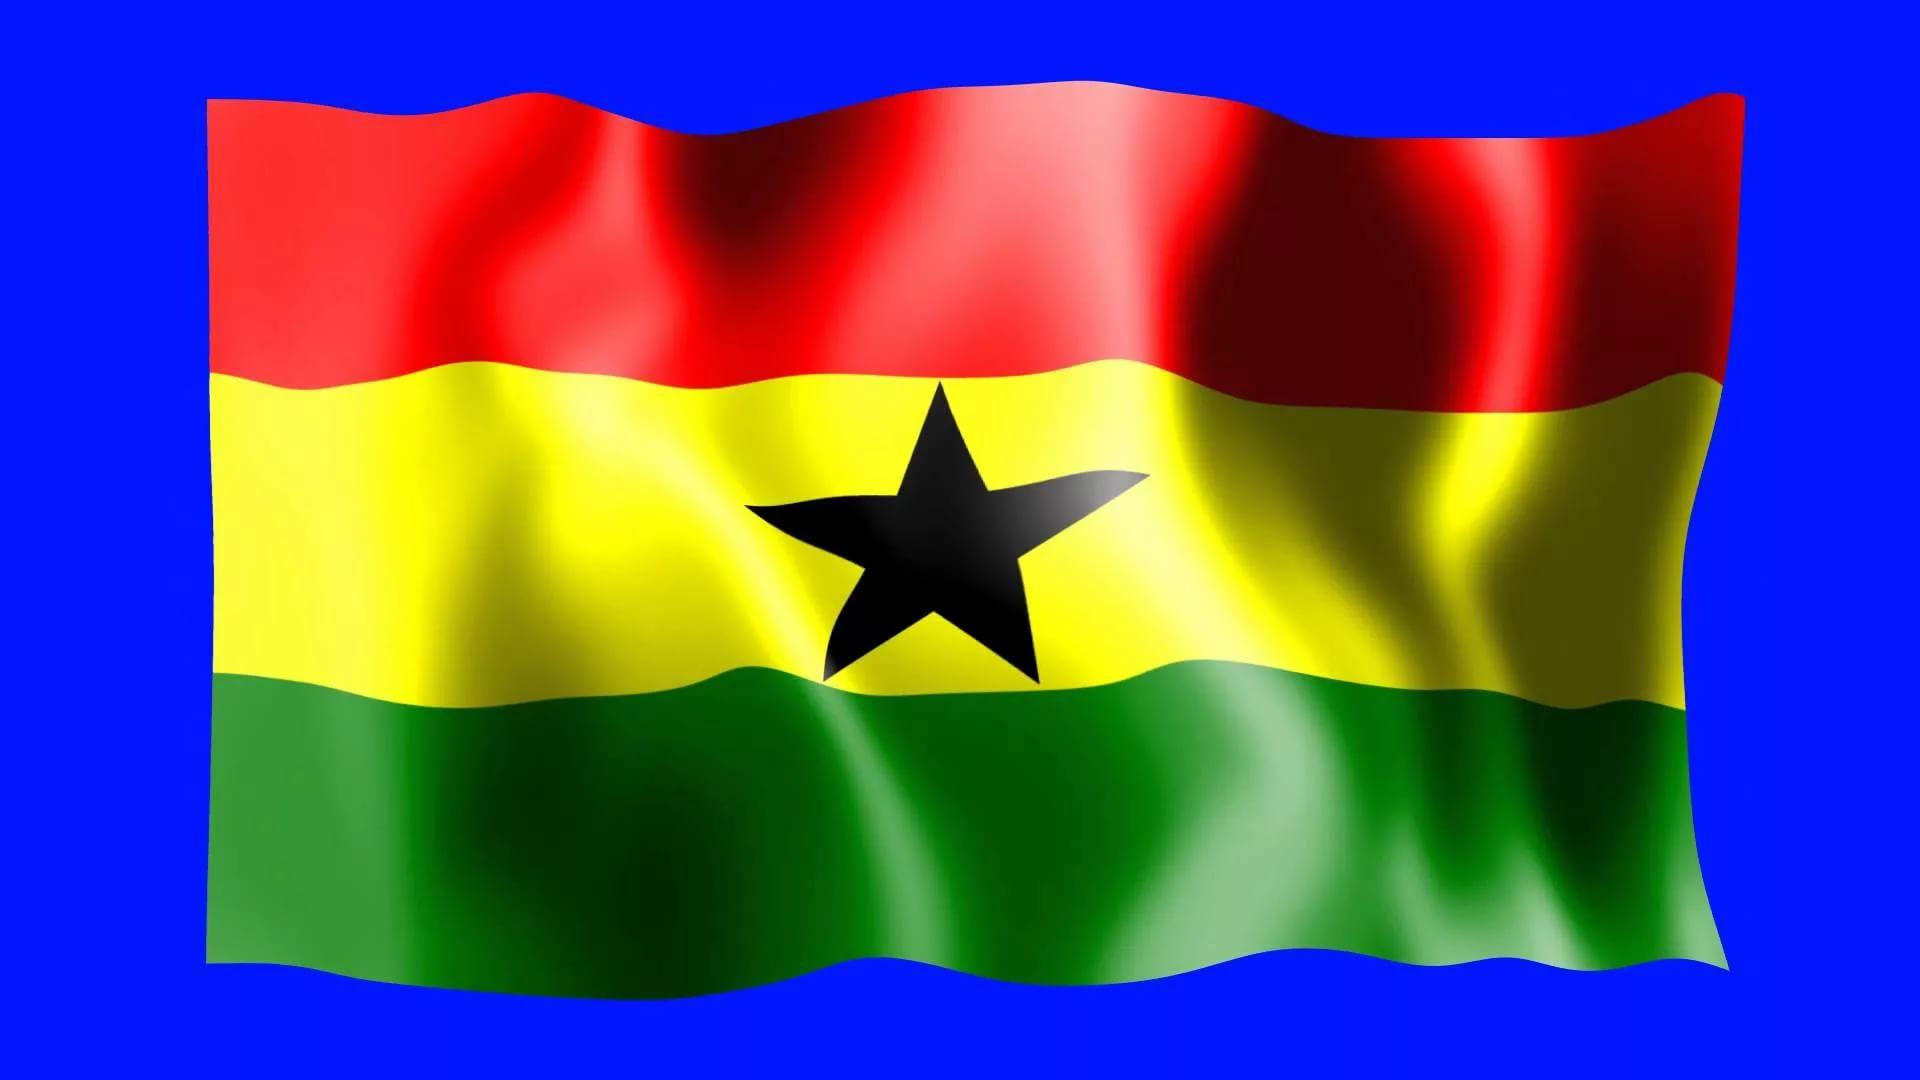 Ghana 2K Wallpapers free